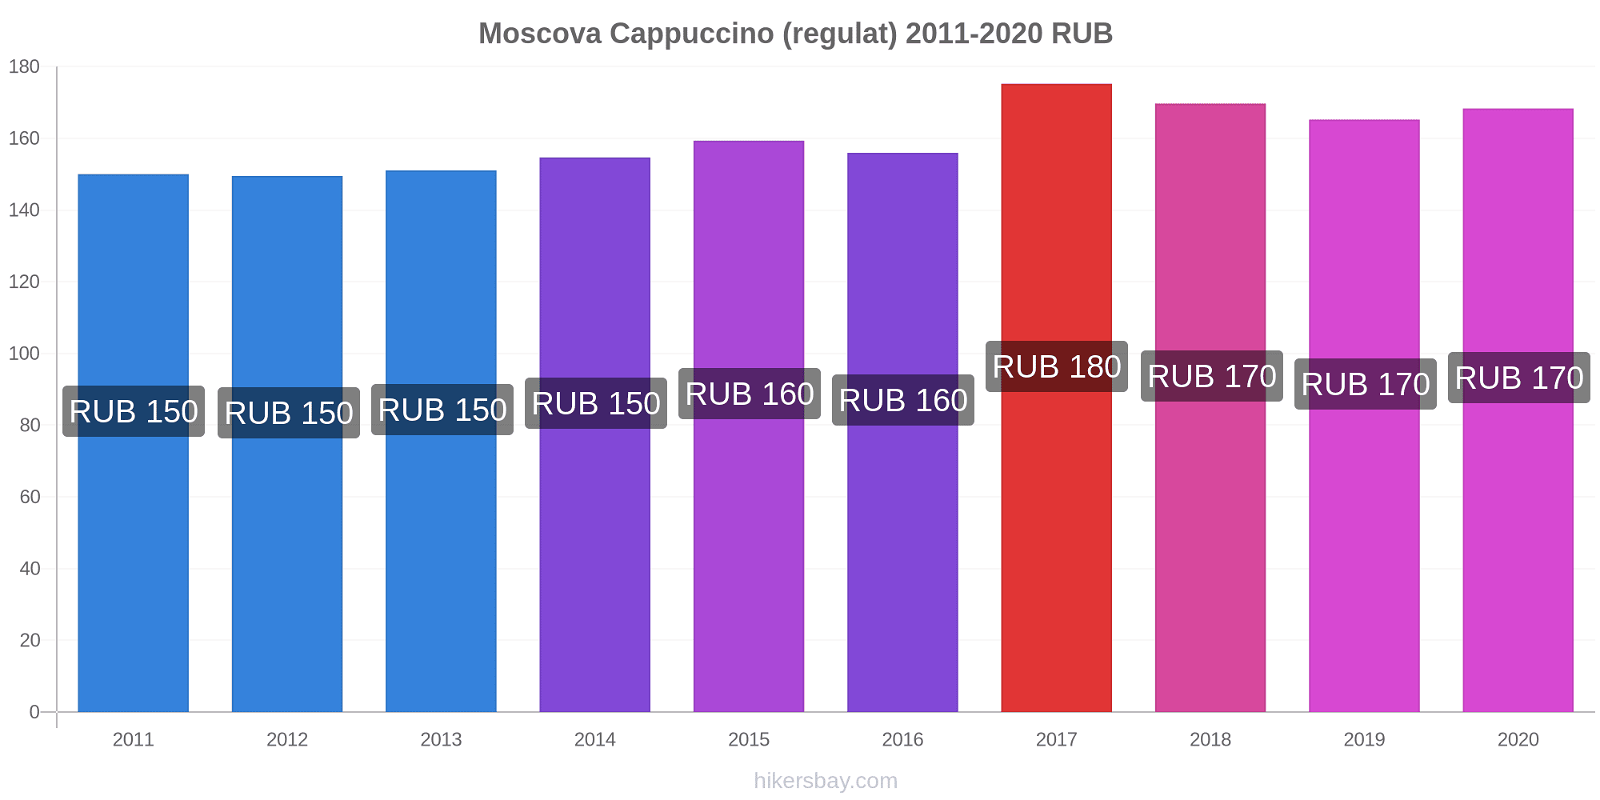 Moscova modificări de preț Cappuccino (regulat) hikersbay.com